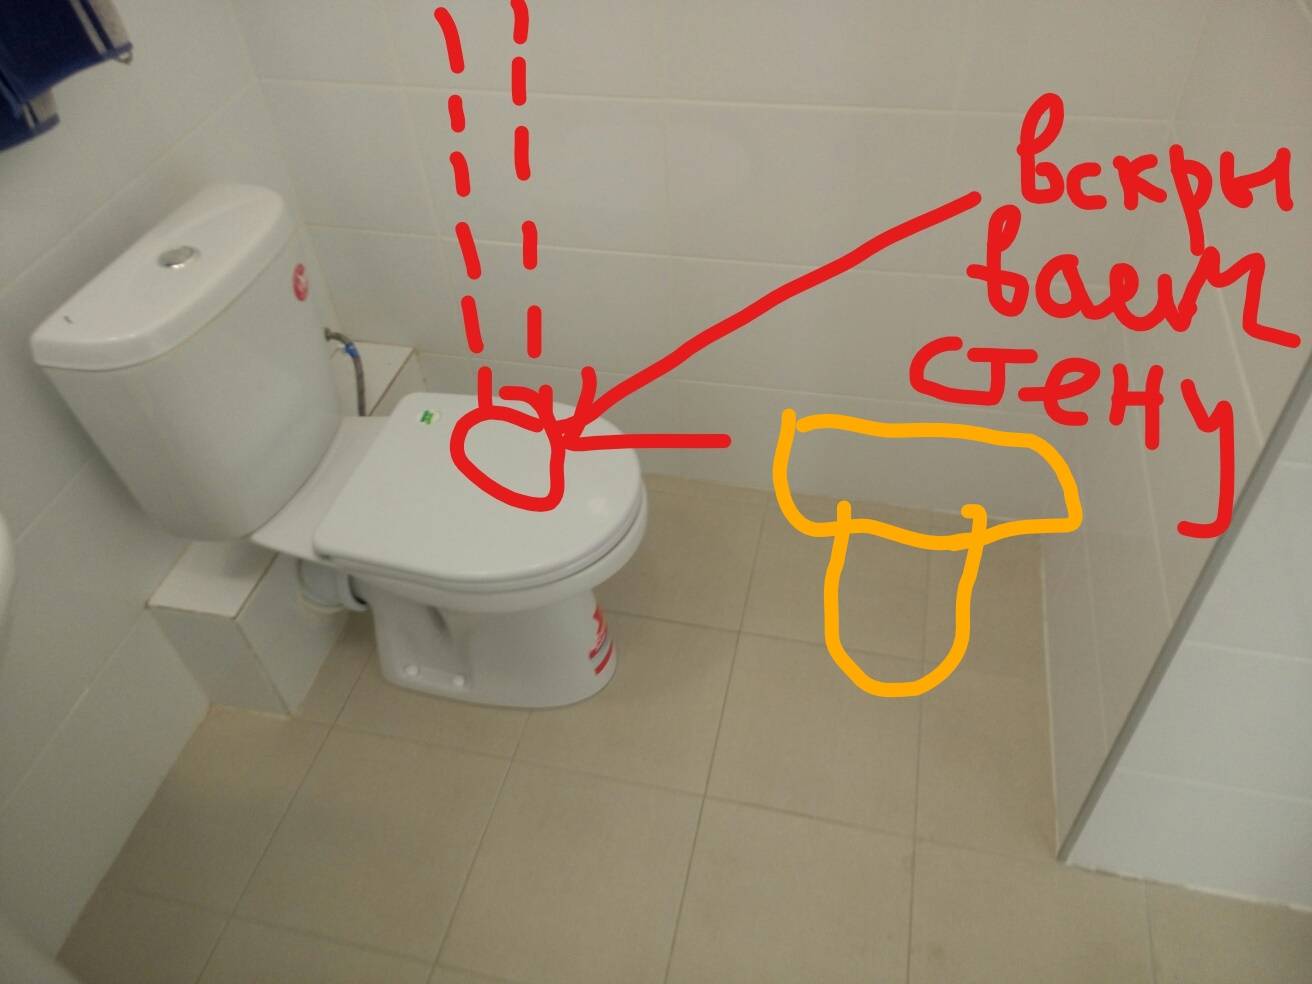 Как правильно перенести унитаз от стояка при совмещении ванны с туалетом?